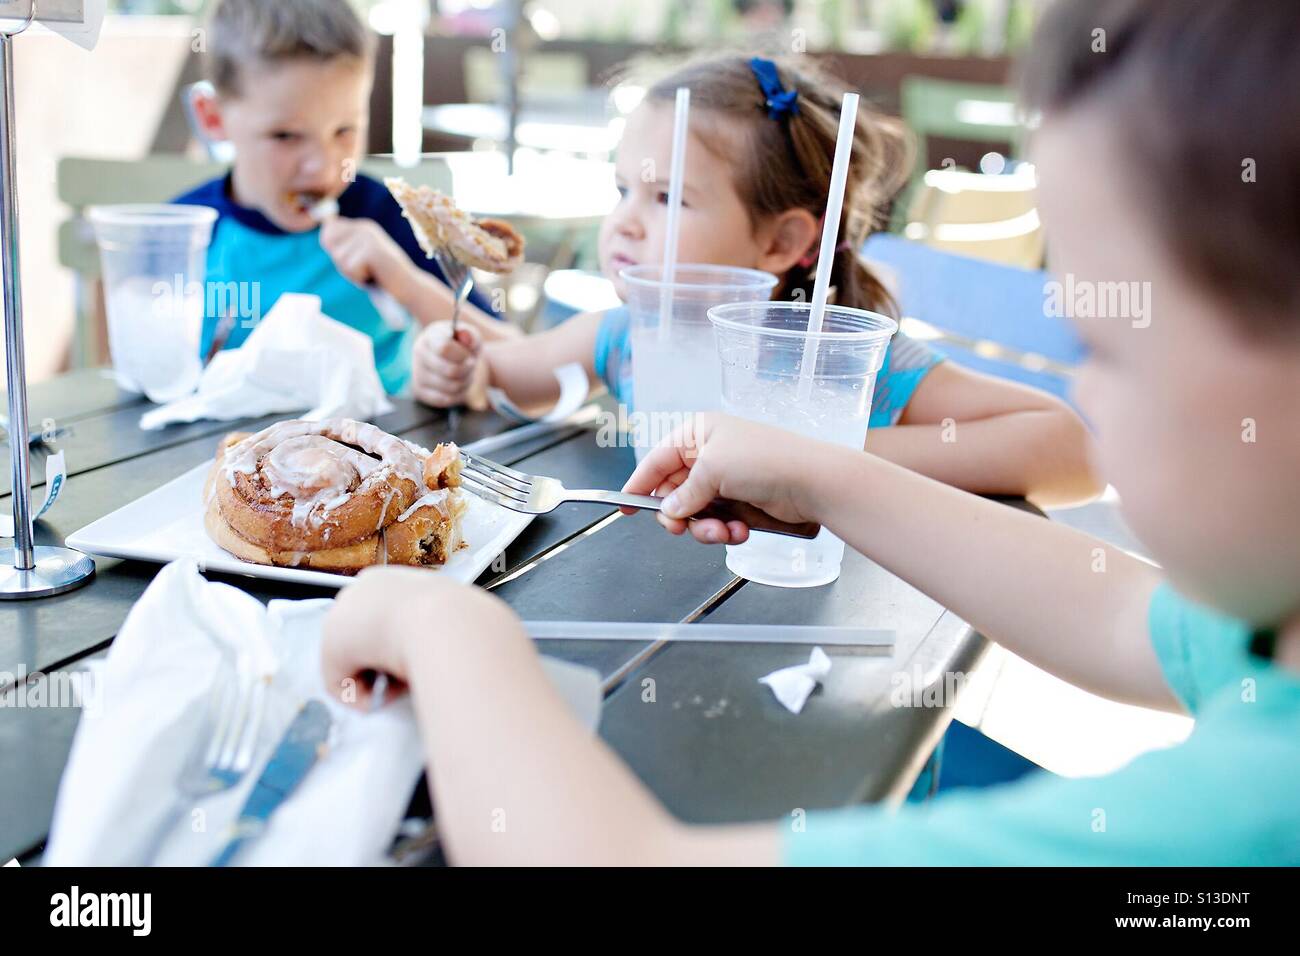 Kinder ein riesiger Zimtbrötchen in einem Restaurant Essen Stockfoto